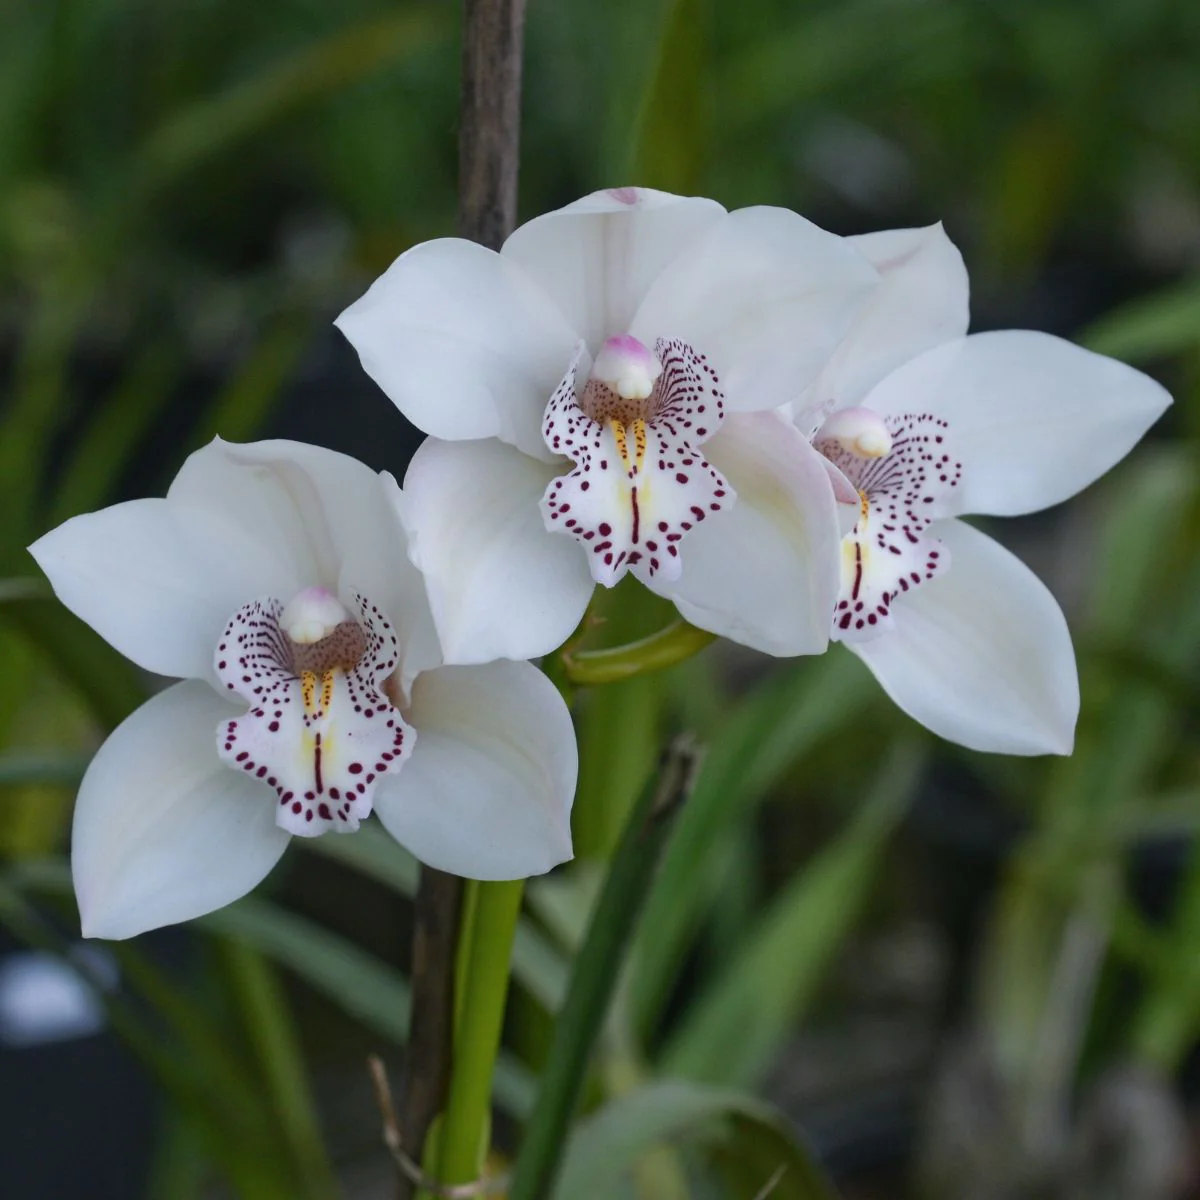 flores brancas de orquídea Cymbidium